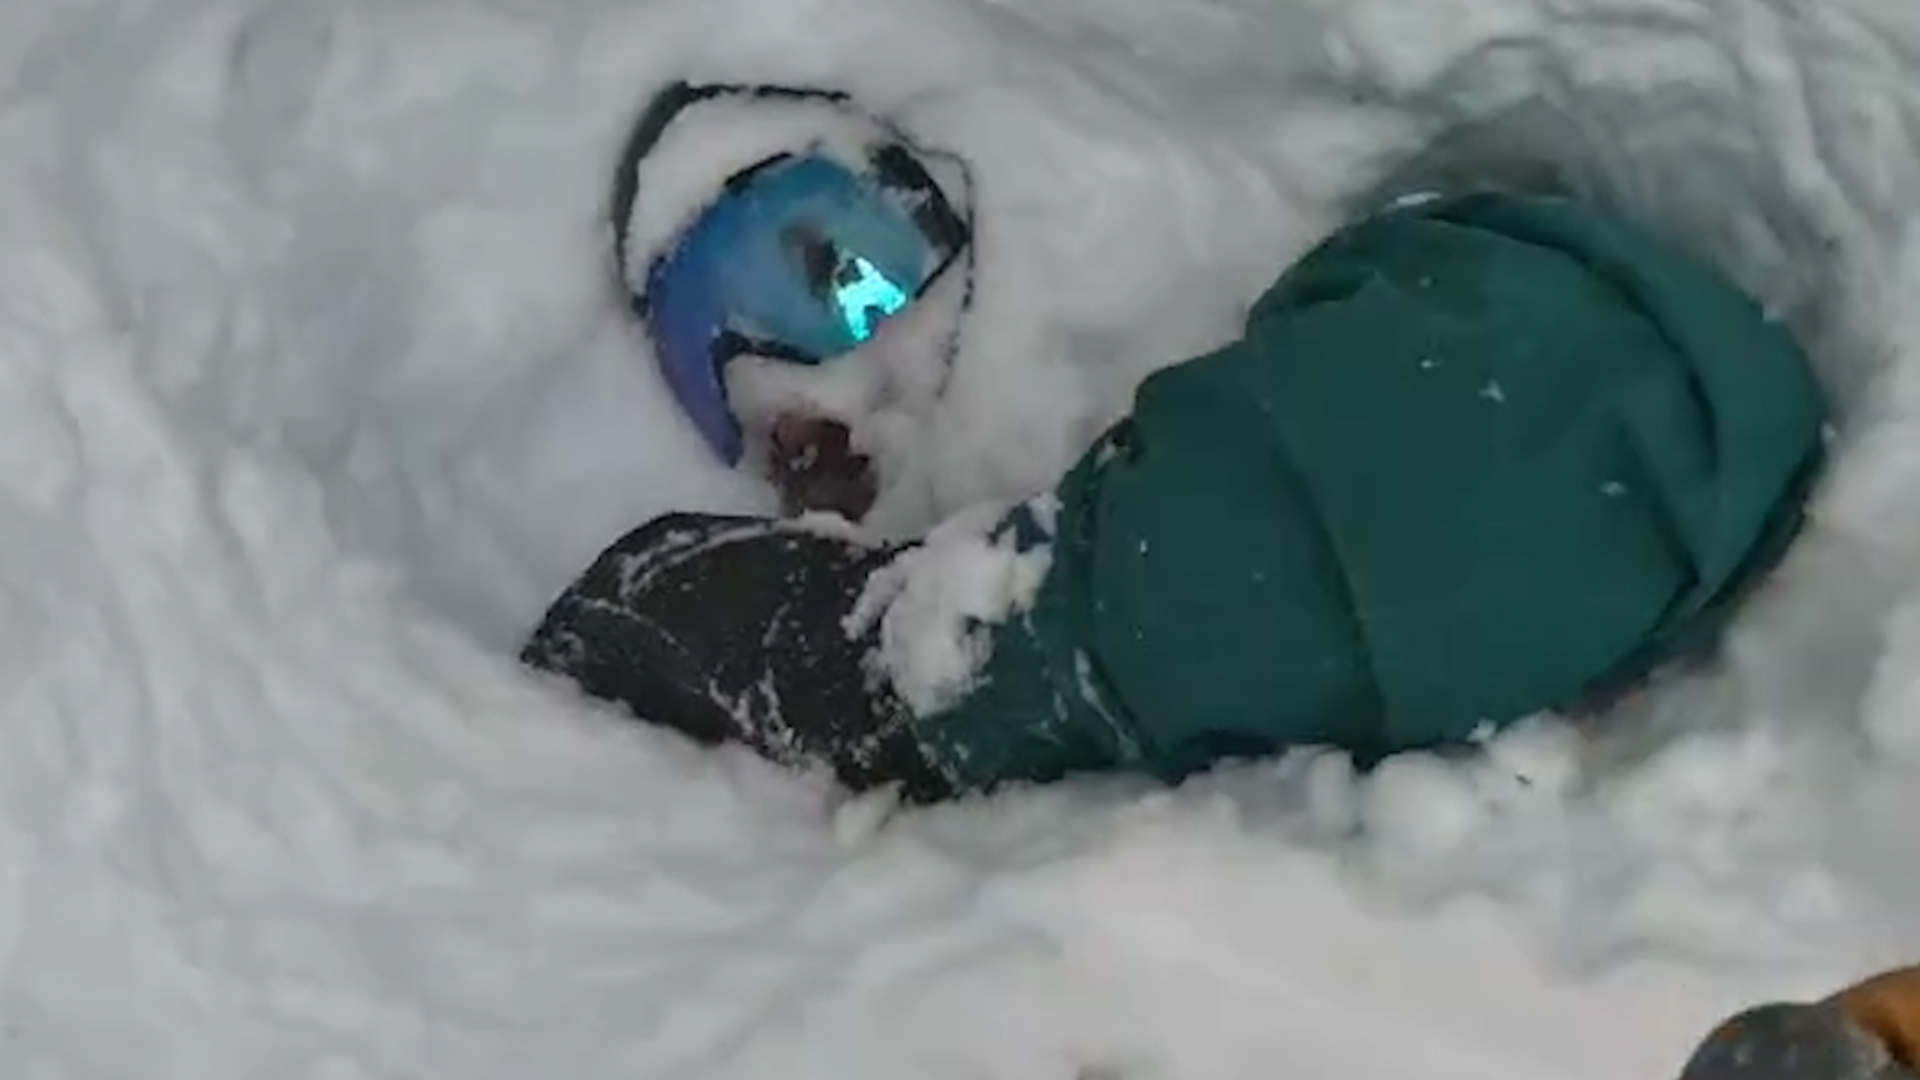 Ce snowboarder a sans doute eu la peur de sa vie avant qu'un skieur arrive et le sauve